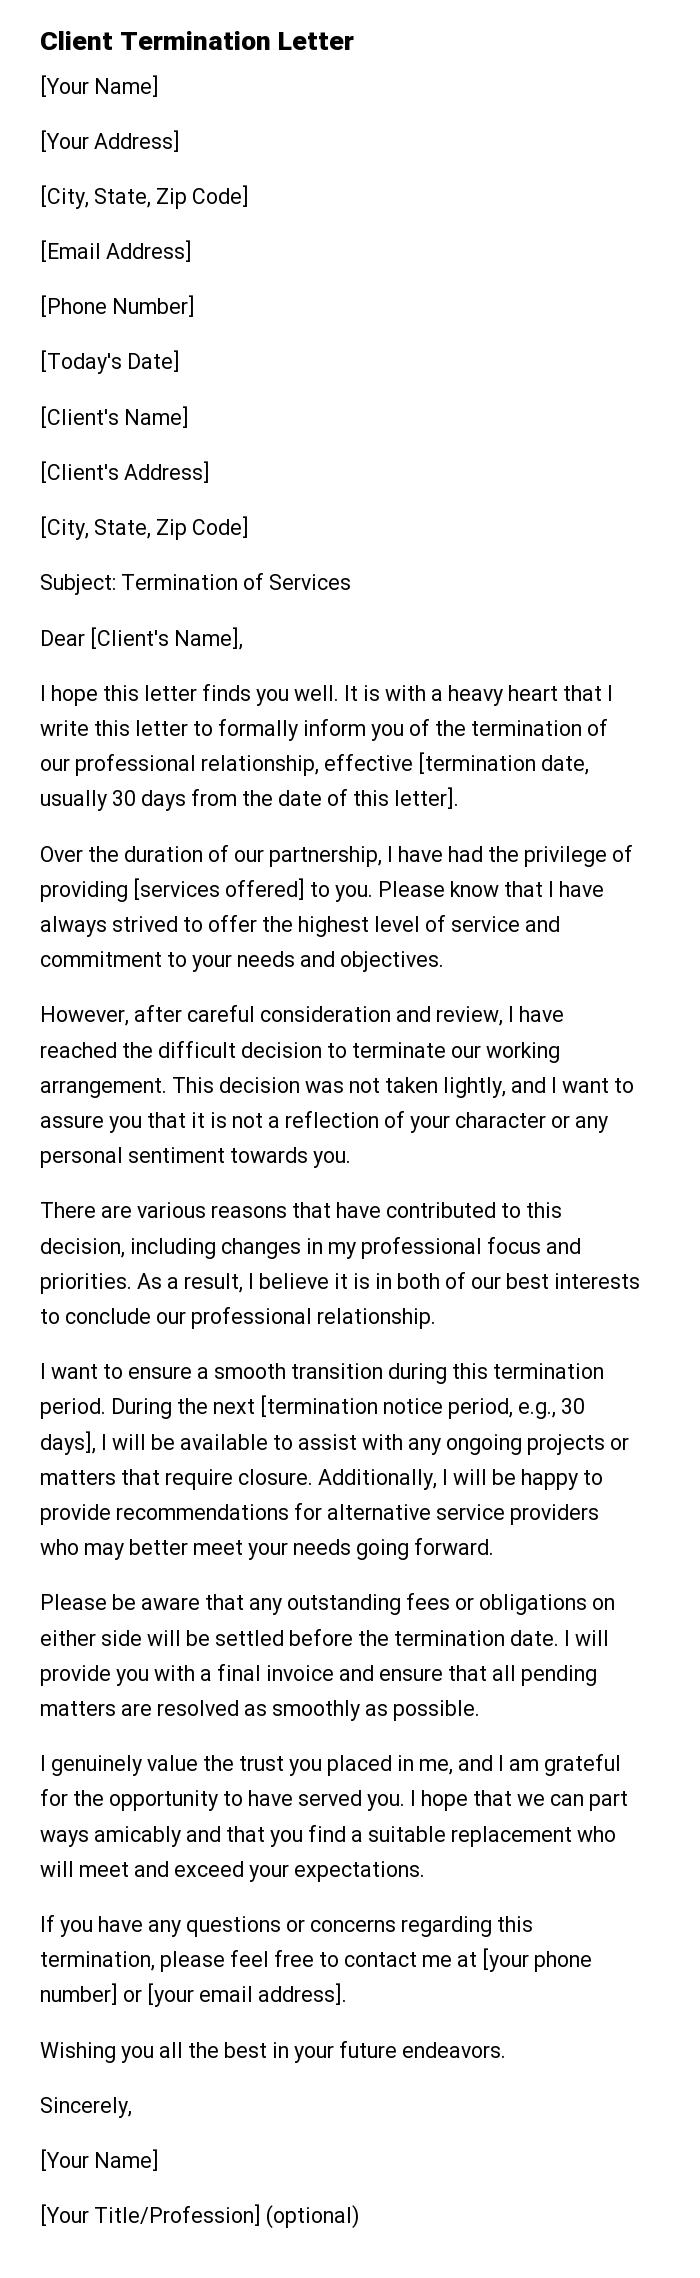 Client Termination Letter